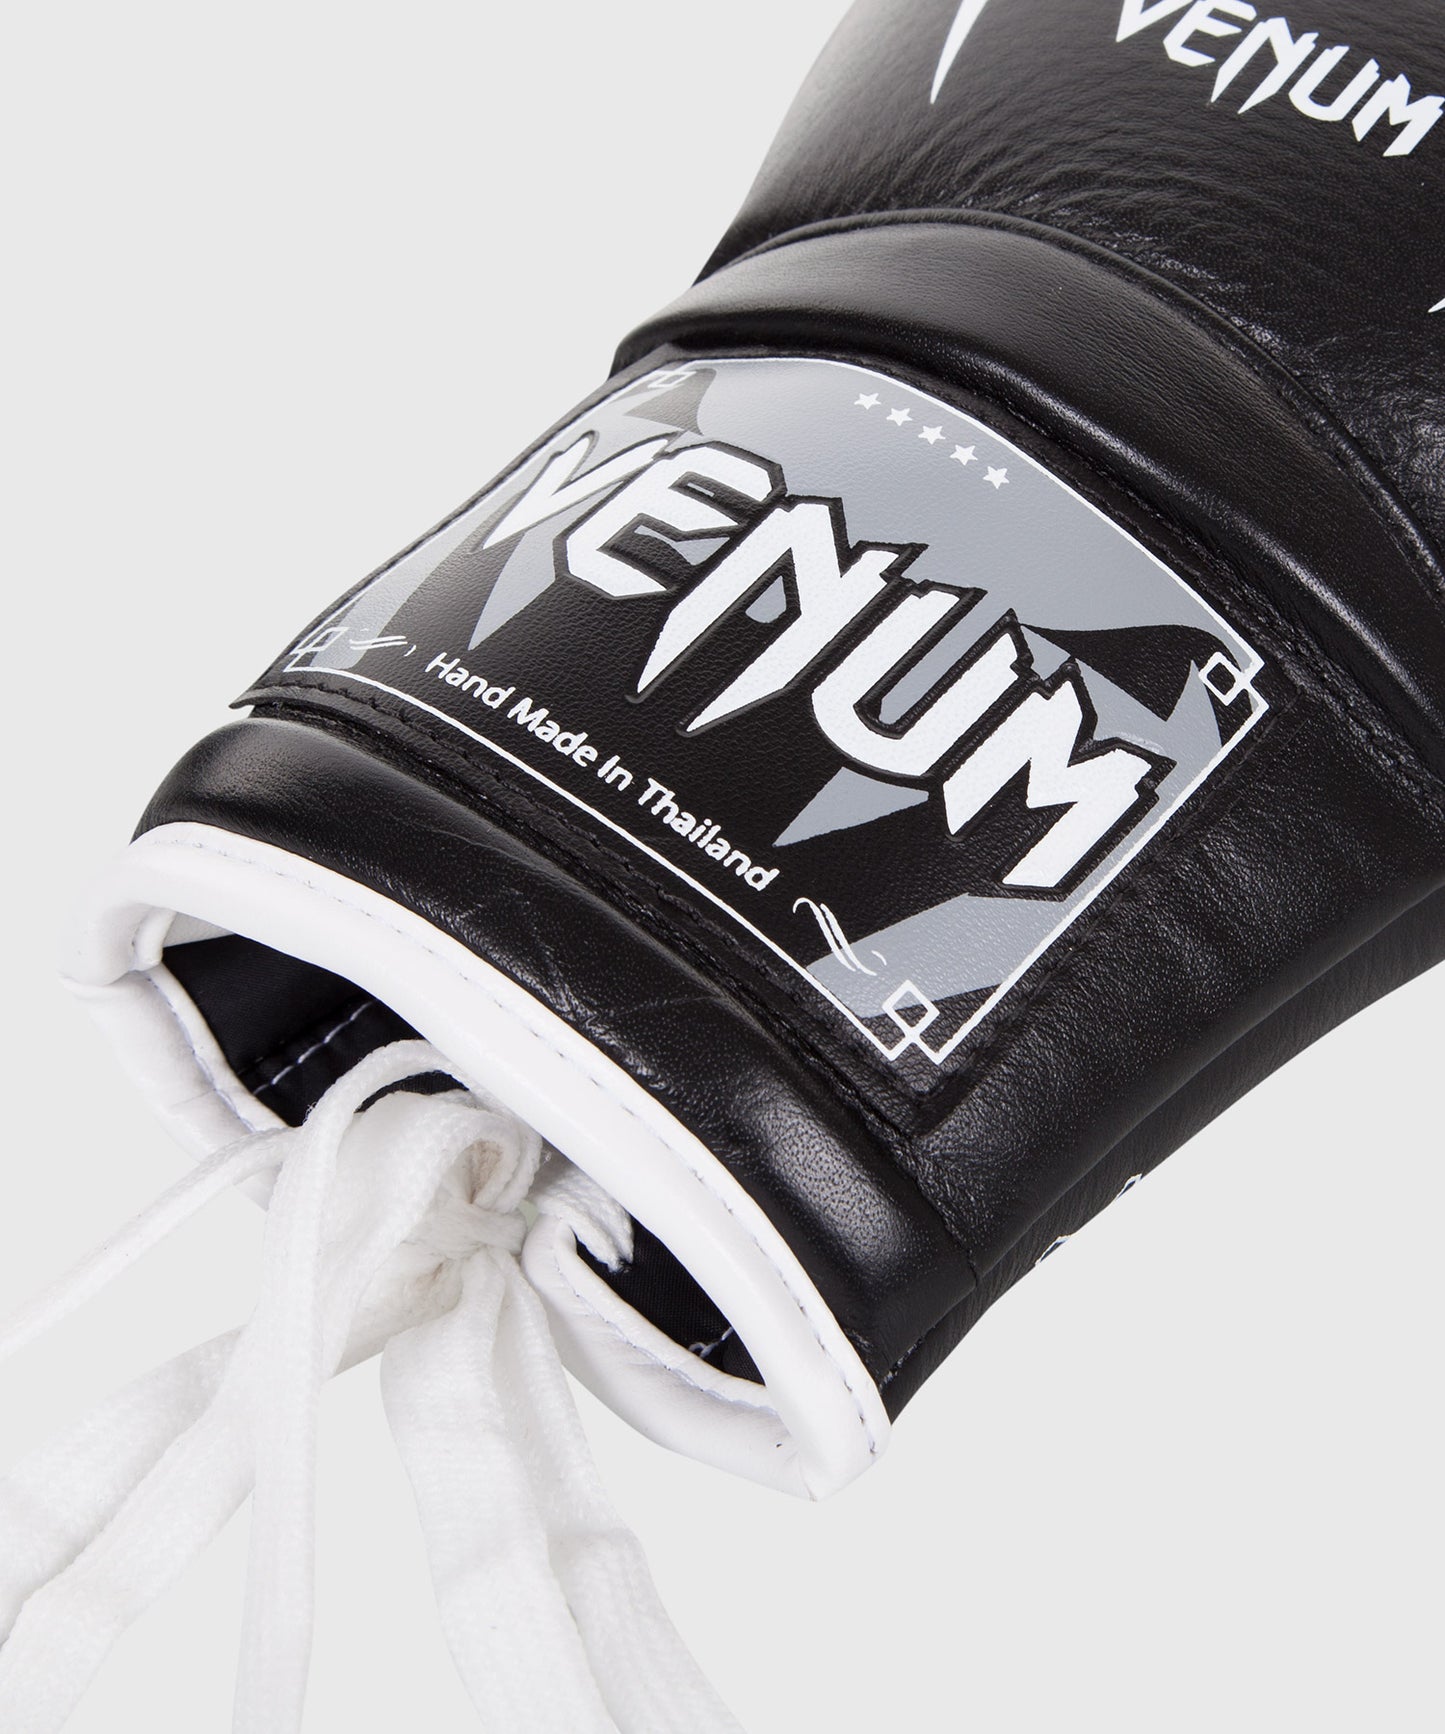 Guantes de Boxeo Venum Giant 3.0 - Cuero Nappa - Con cordones - Negro